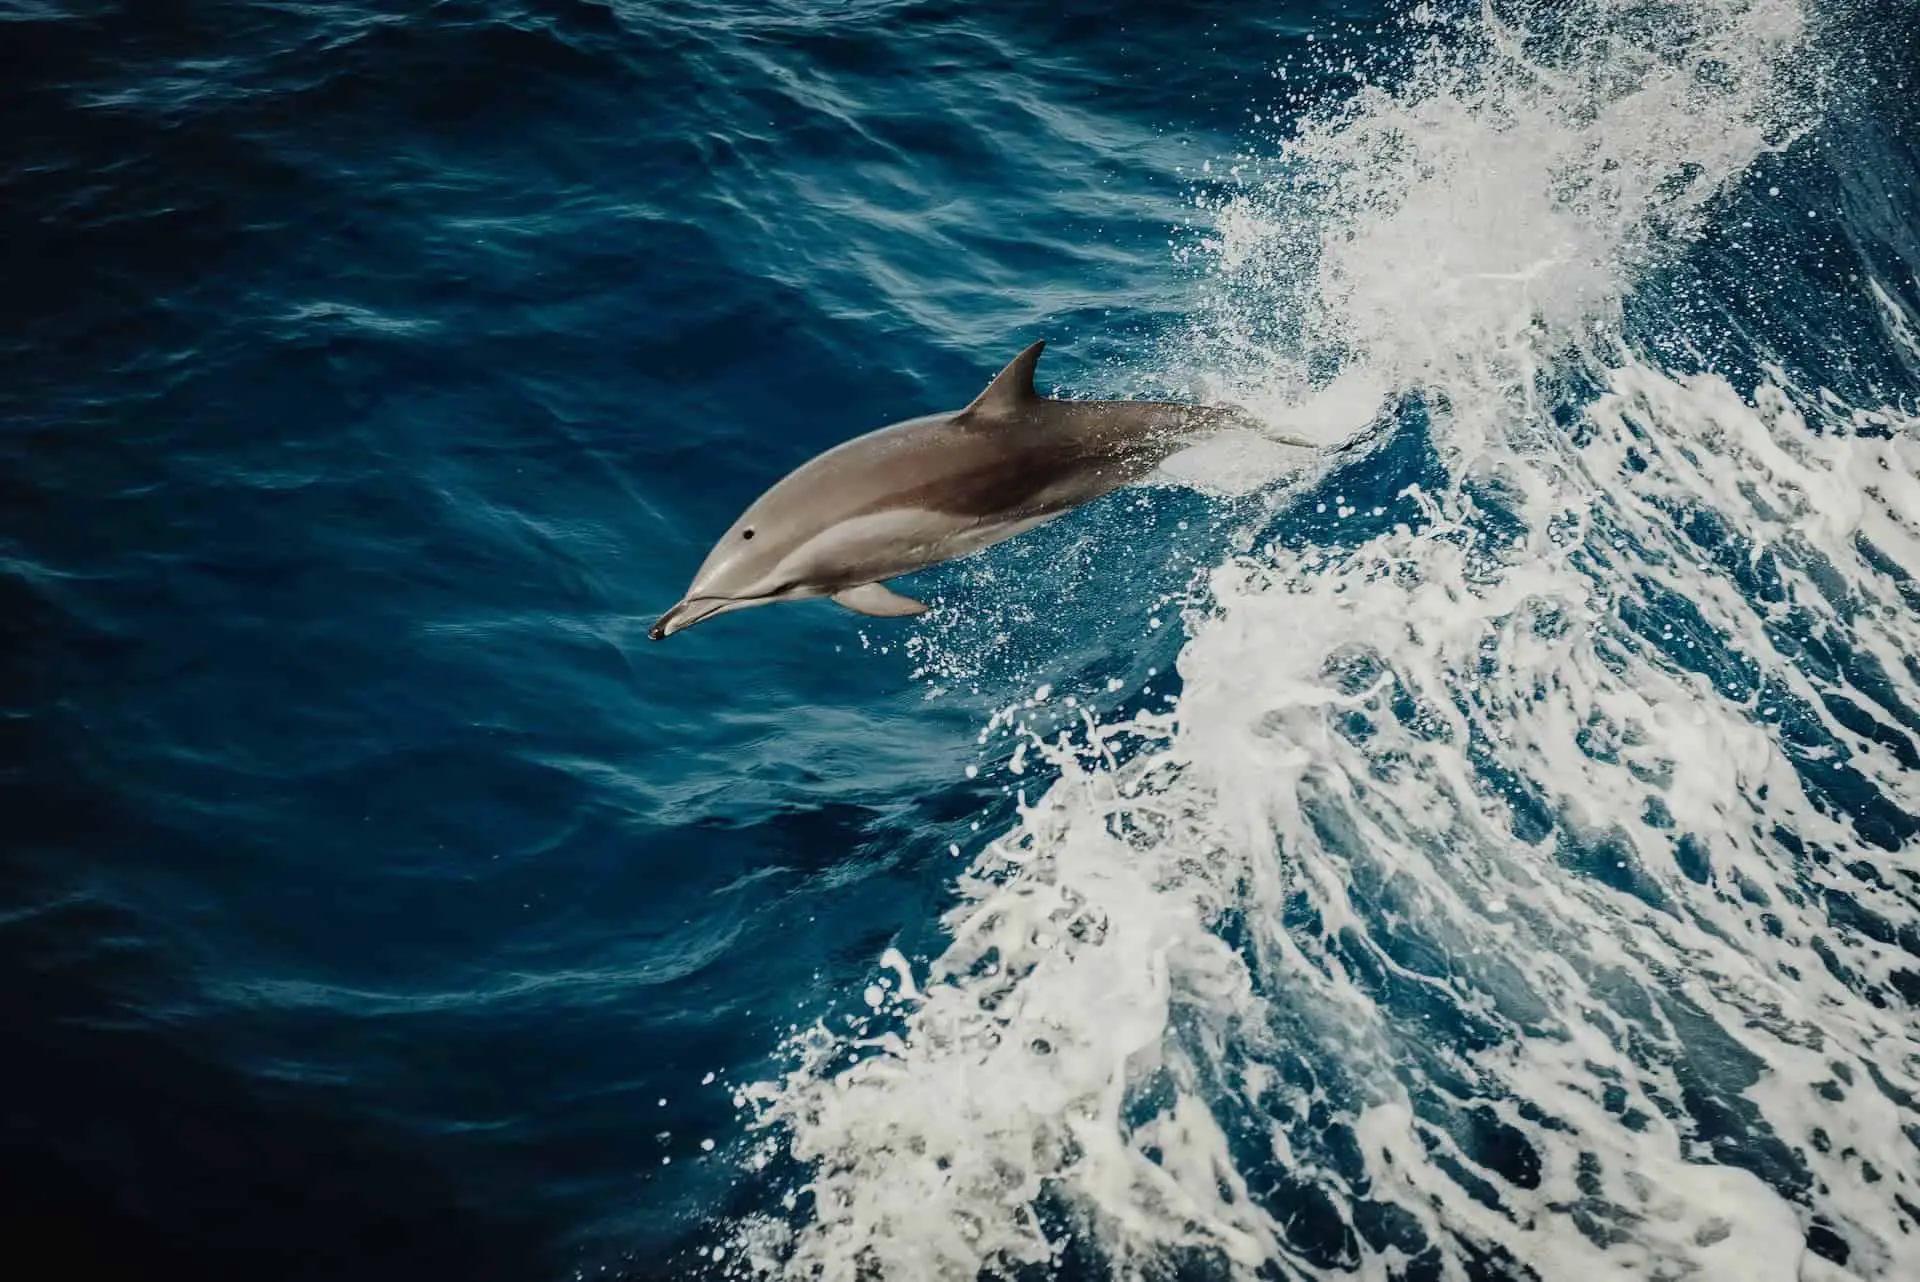 Dolphin diving through the sea